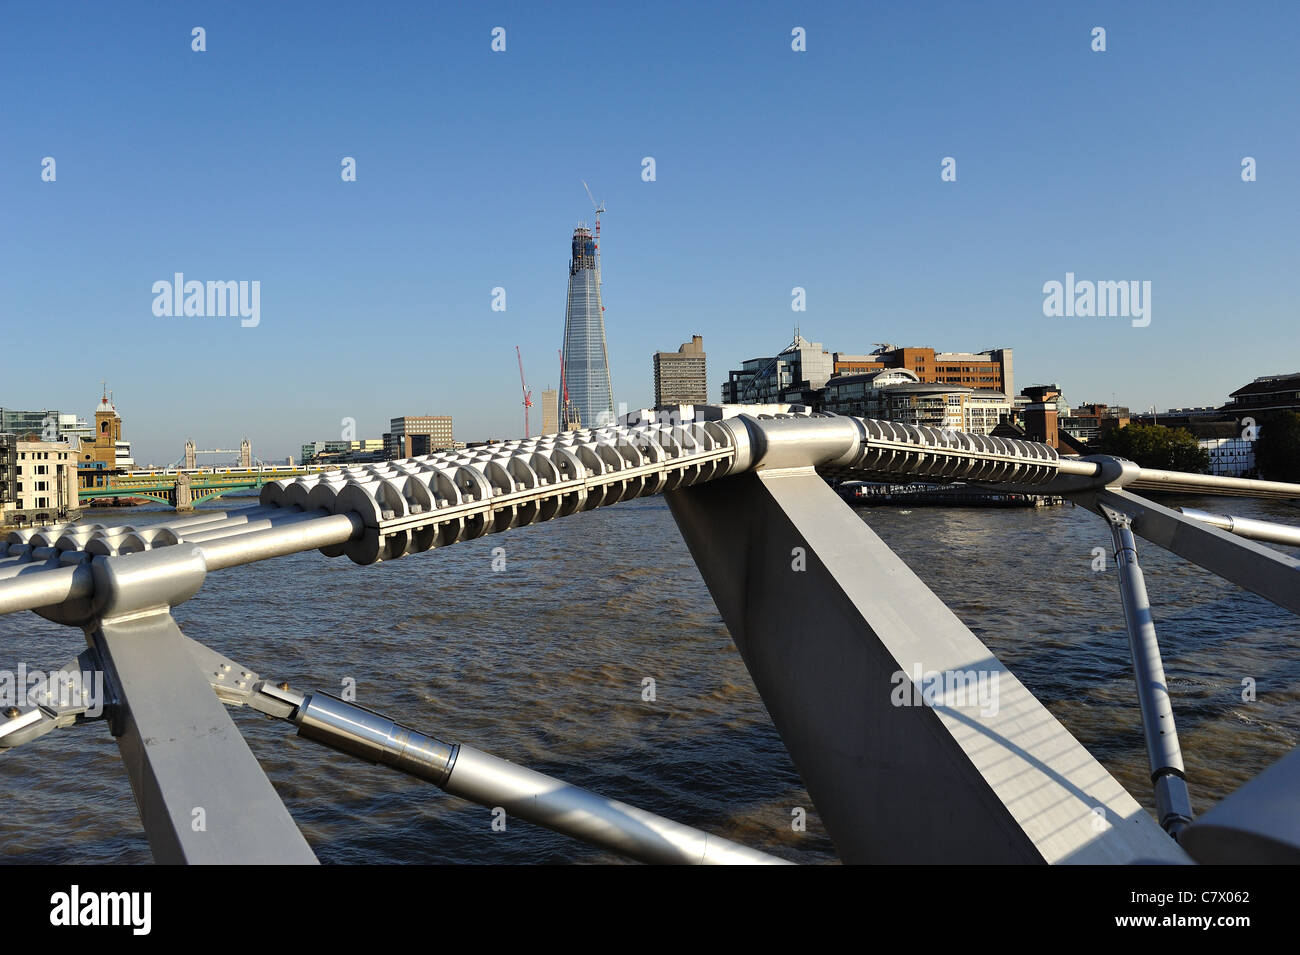 Der Shard London Bridge Tower auch bekannt als Shard of Glass von Millenium Bridge gesehen. Stockfoto